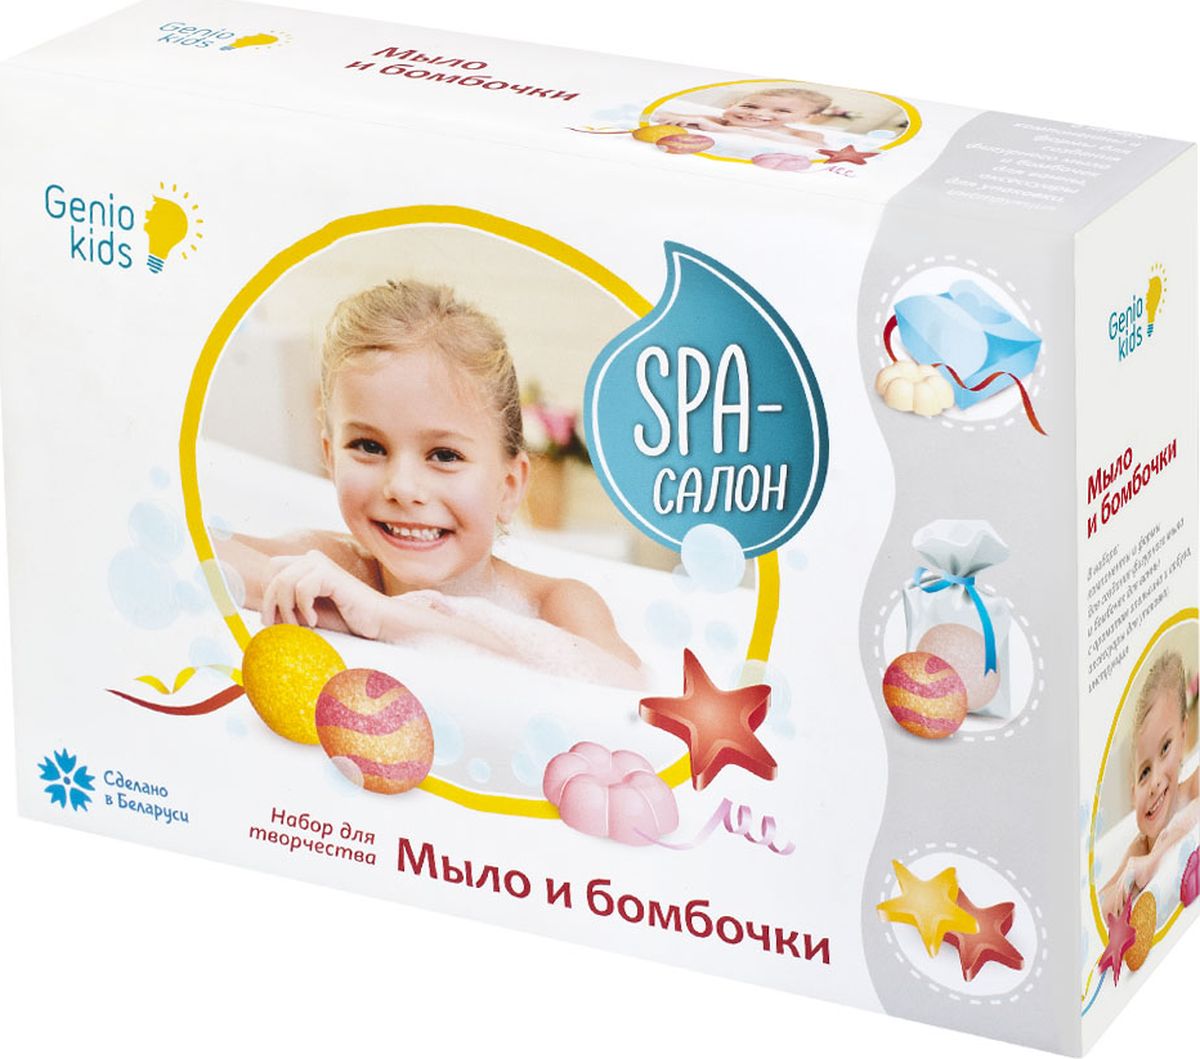 Genio Kids Набор для изготовления мыла SPA-салон